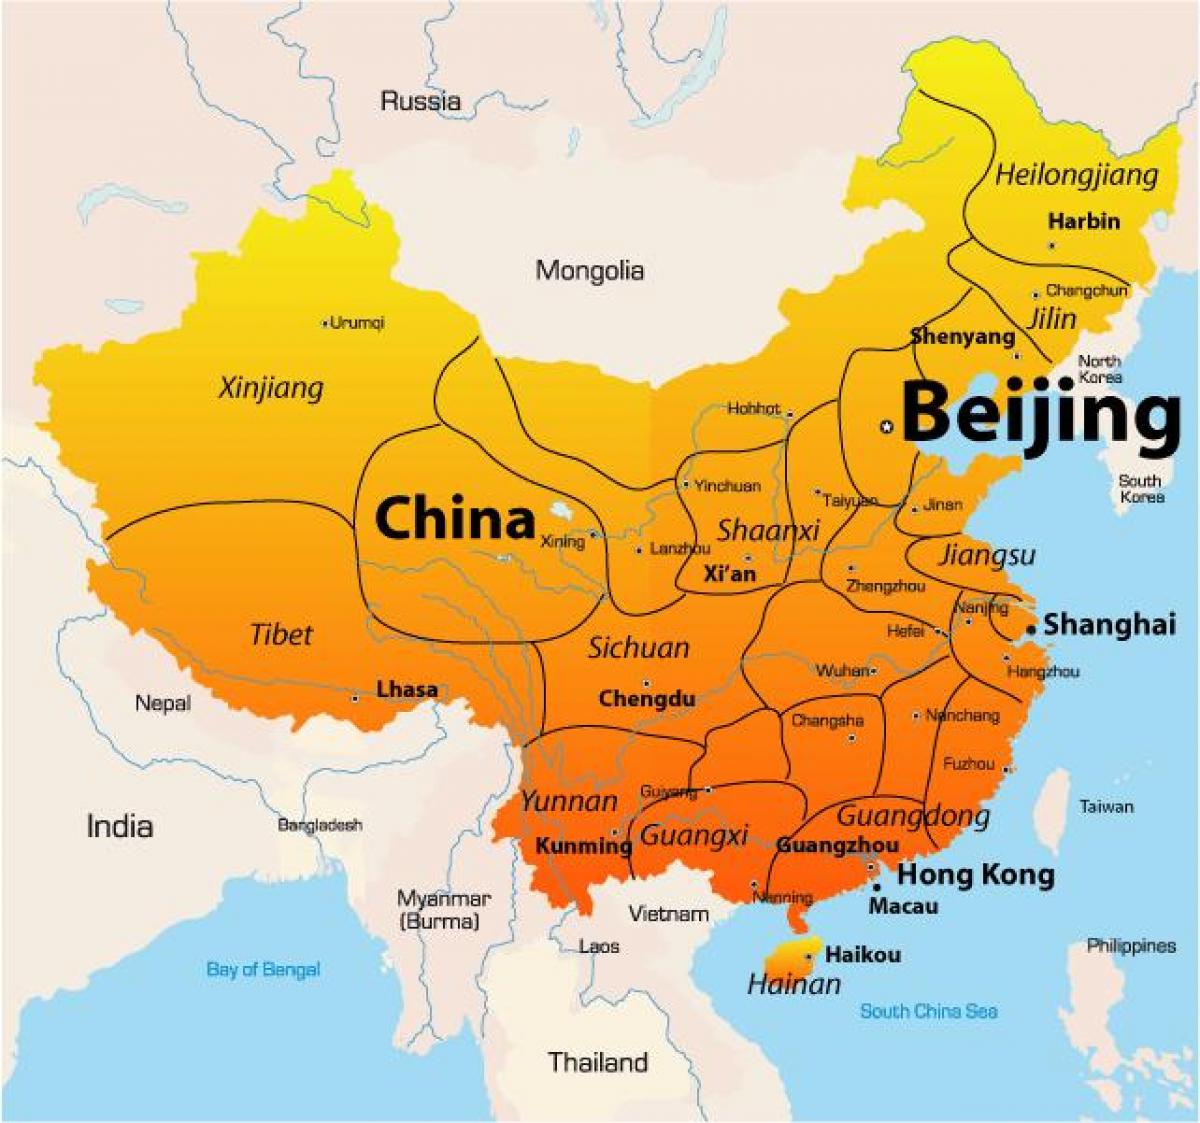 Harita üzerinde Pekin 